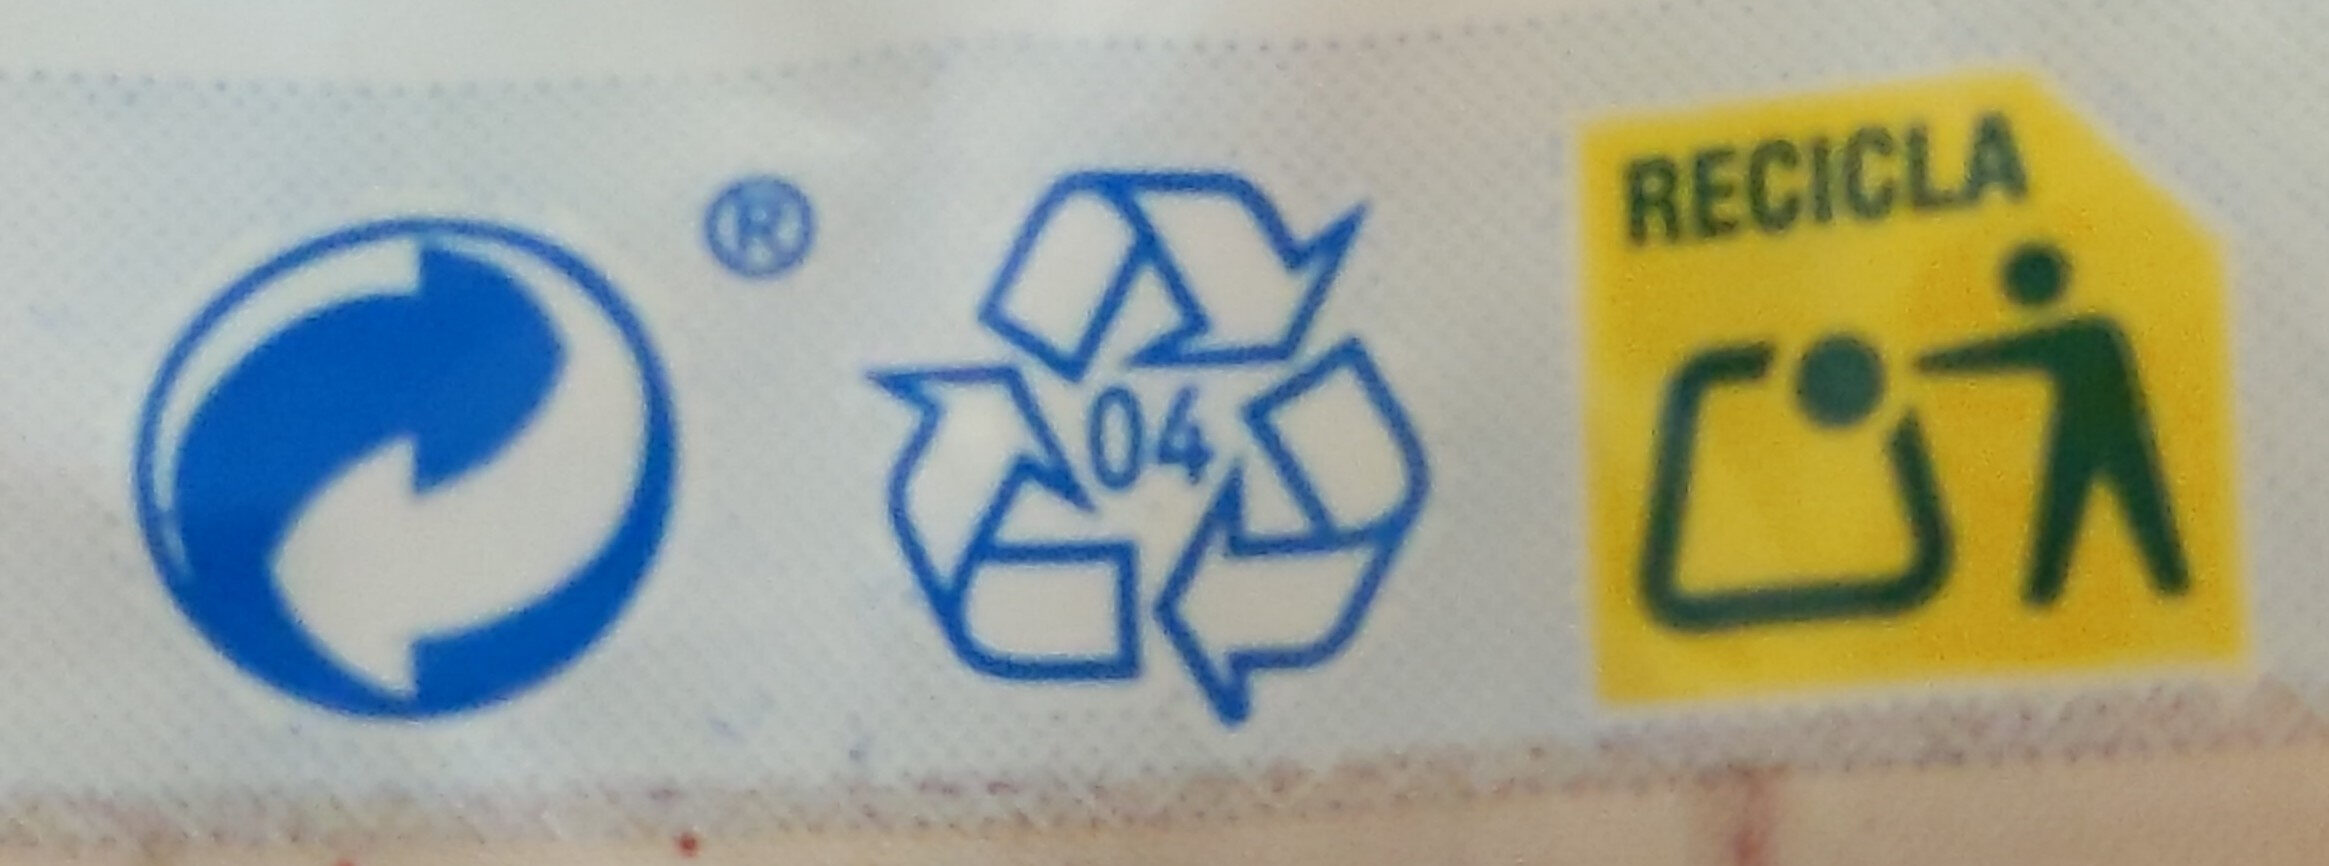 Pan De Hamburguesa - Instruccions de reciclatge i/o informació d’embalatge - es